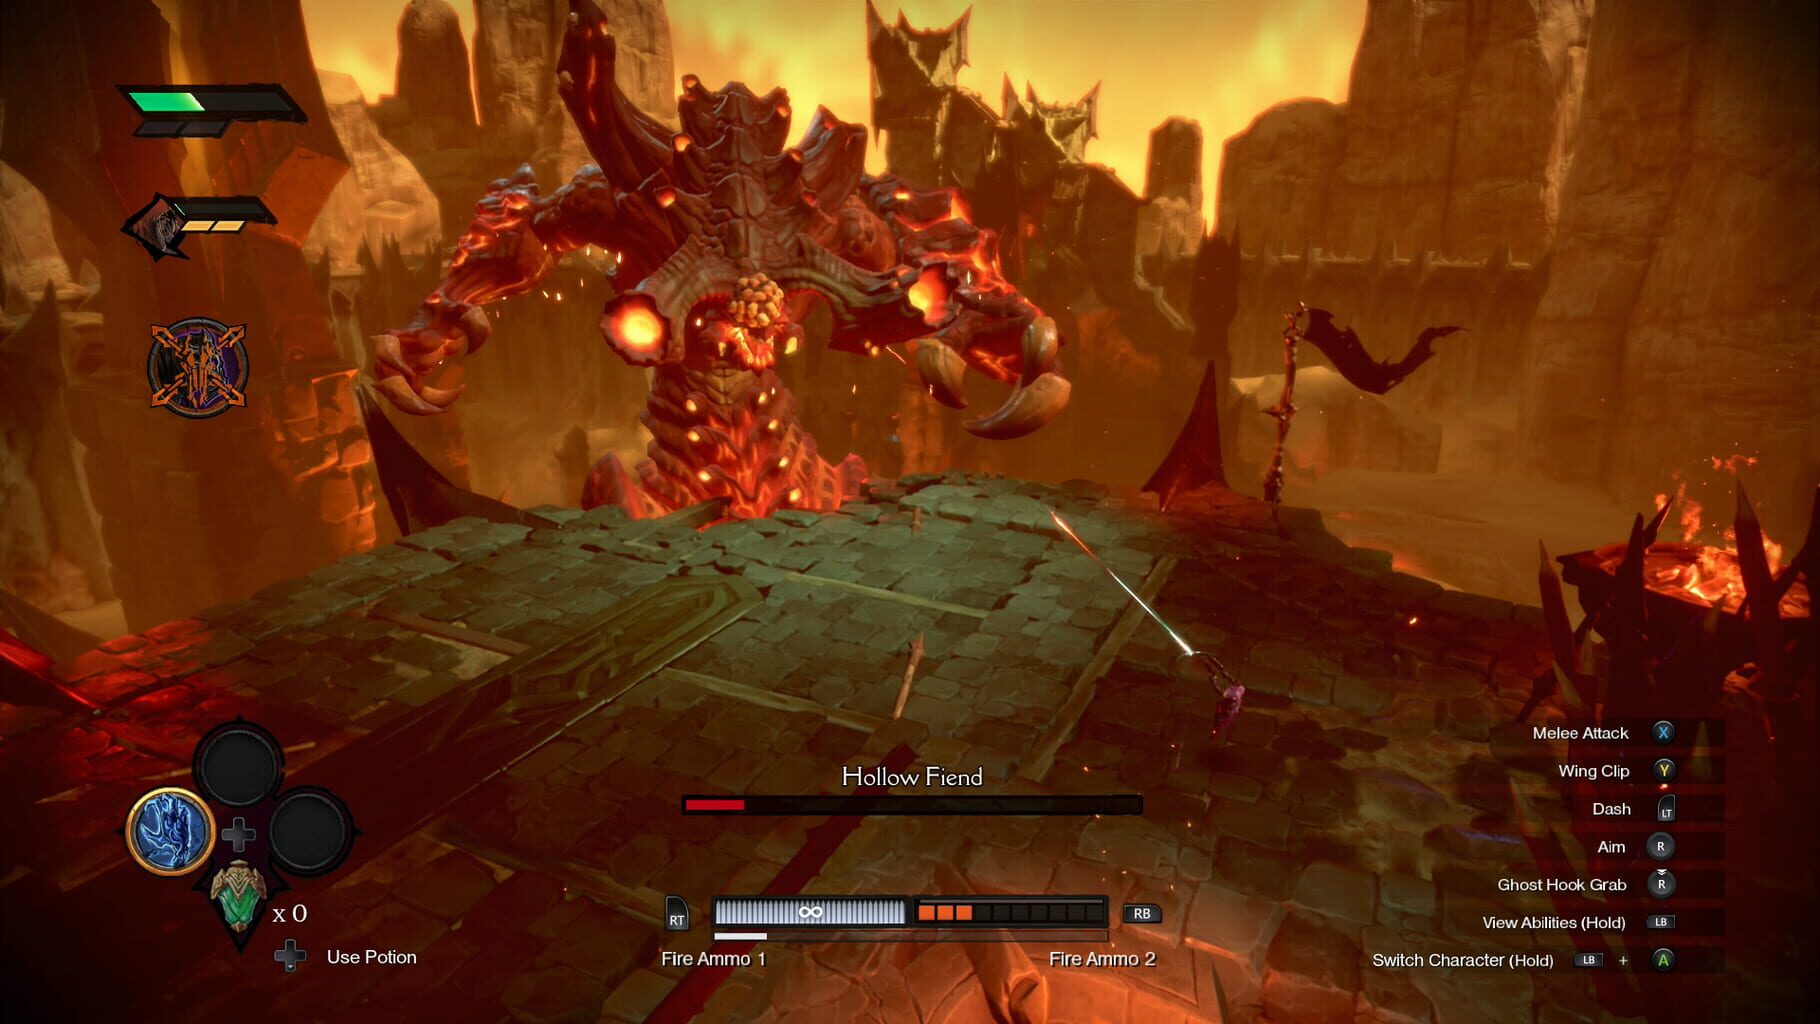 Darksiders Genesis screenshot